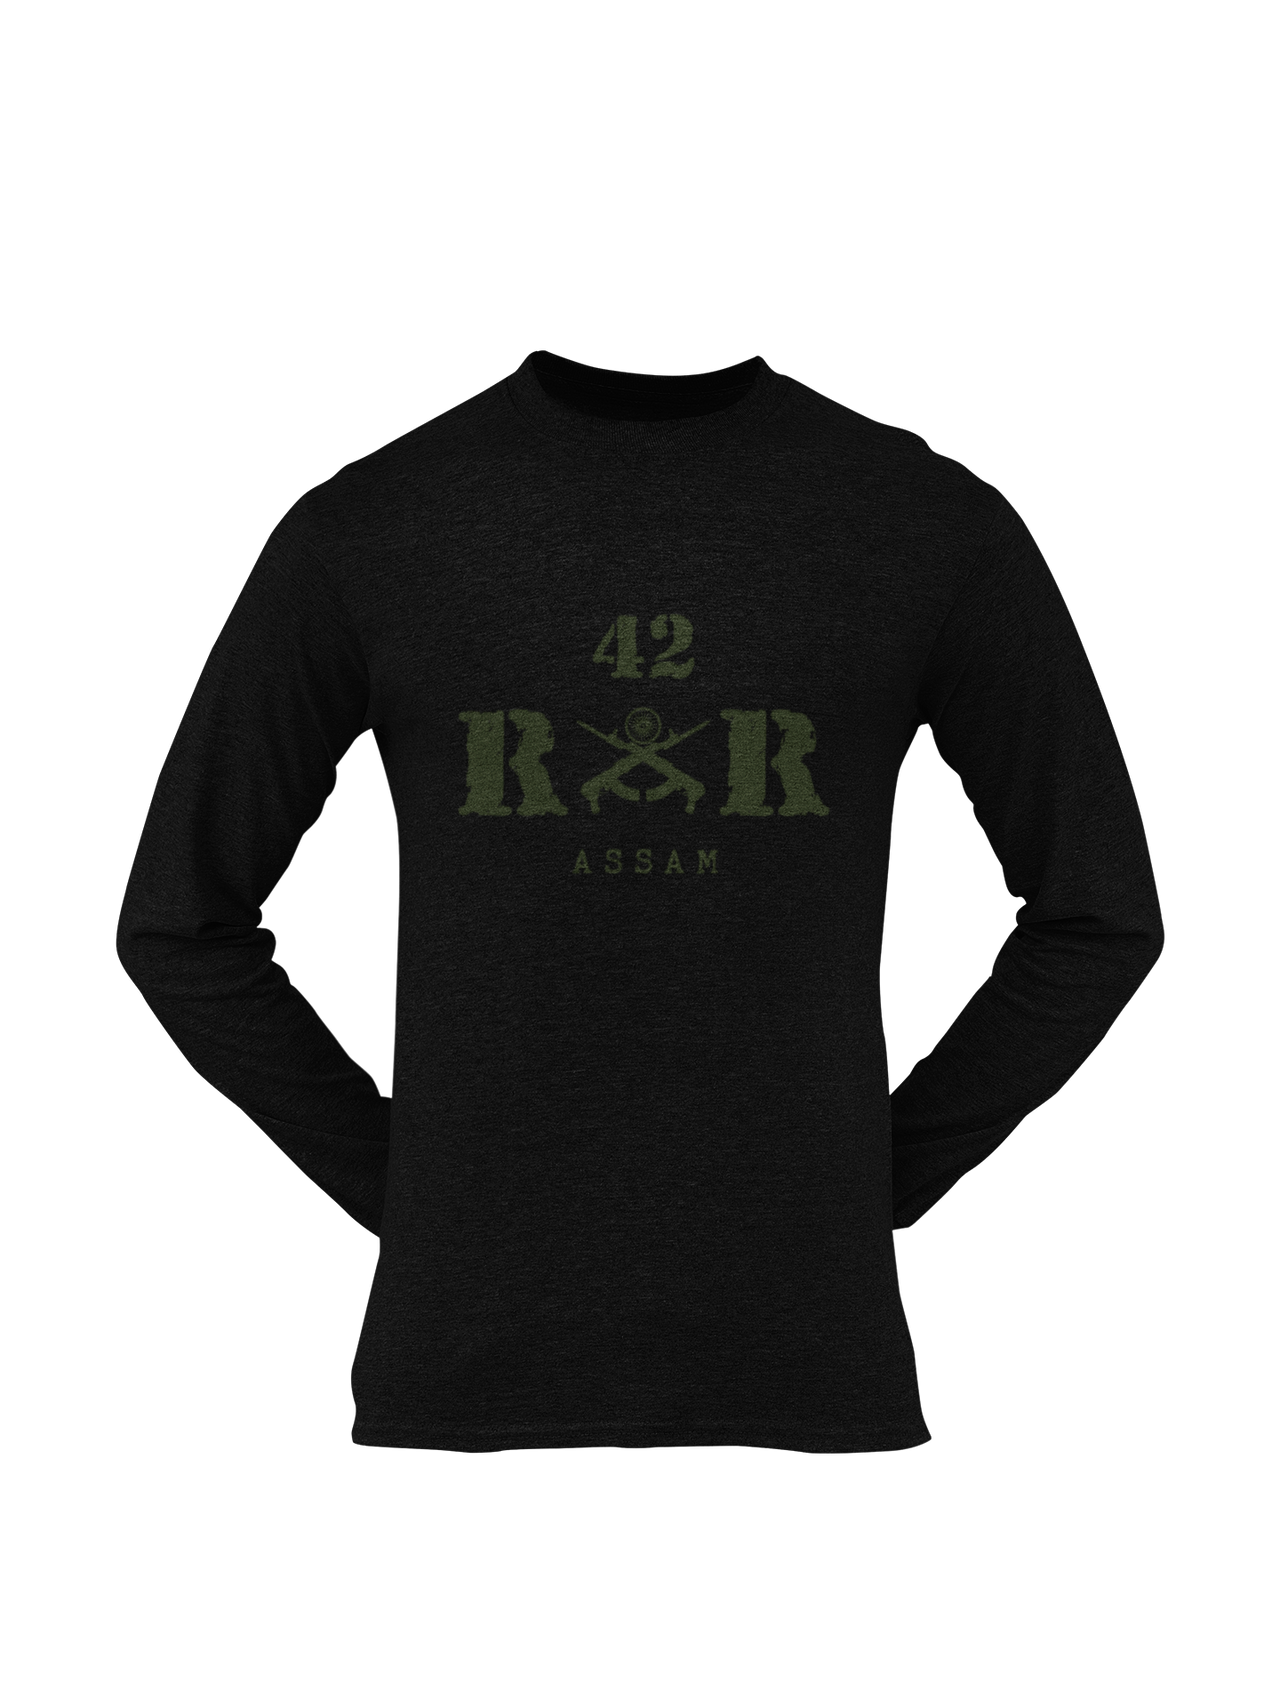 Rashtriya Rifles T-shirt - 42 RR Assam (Men)